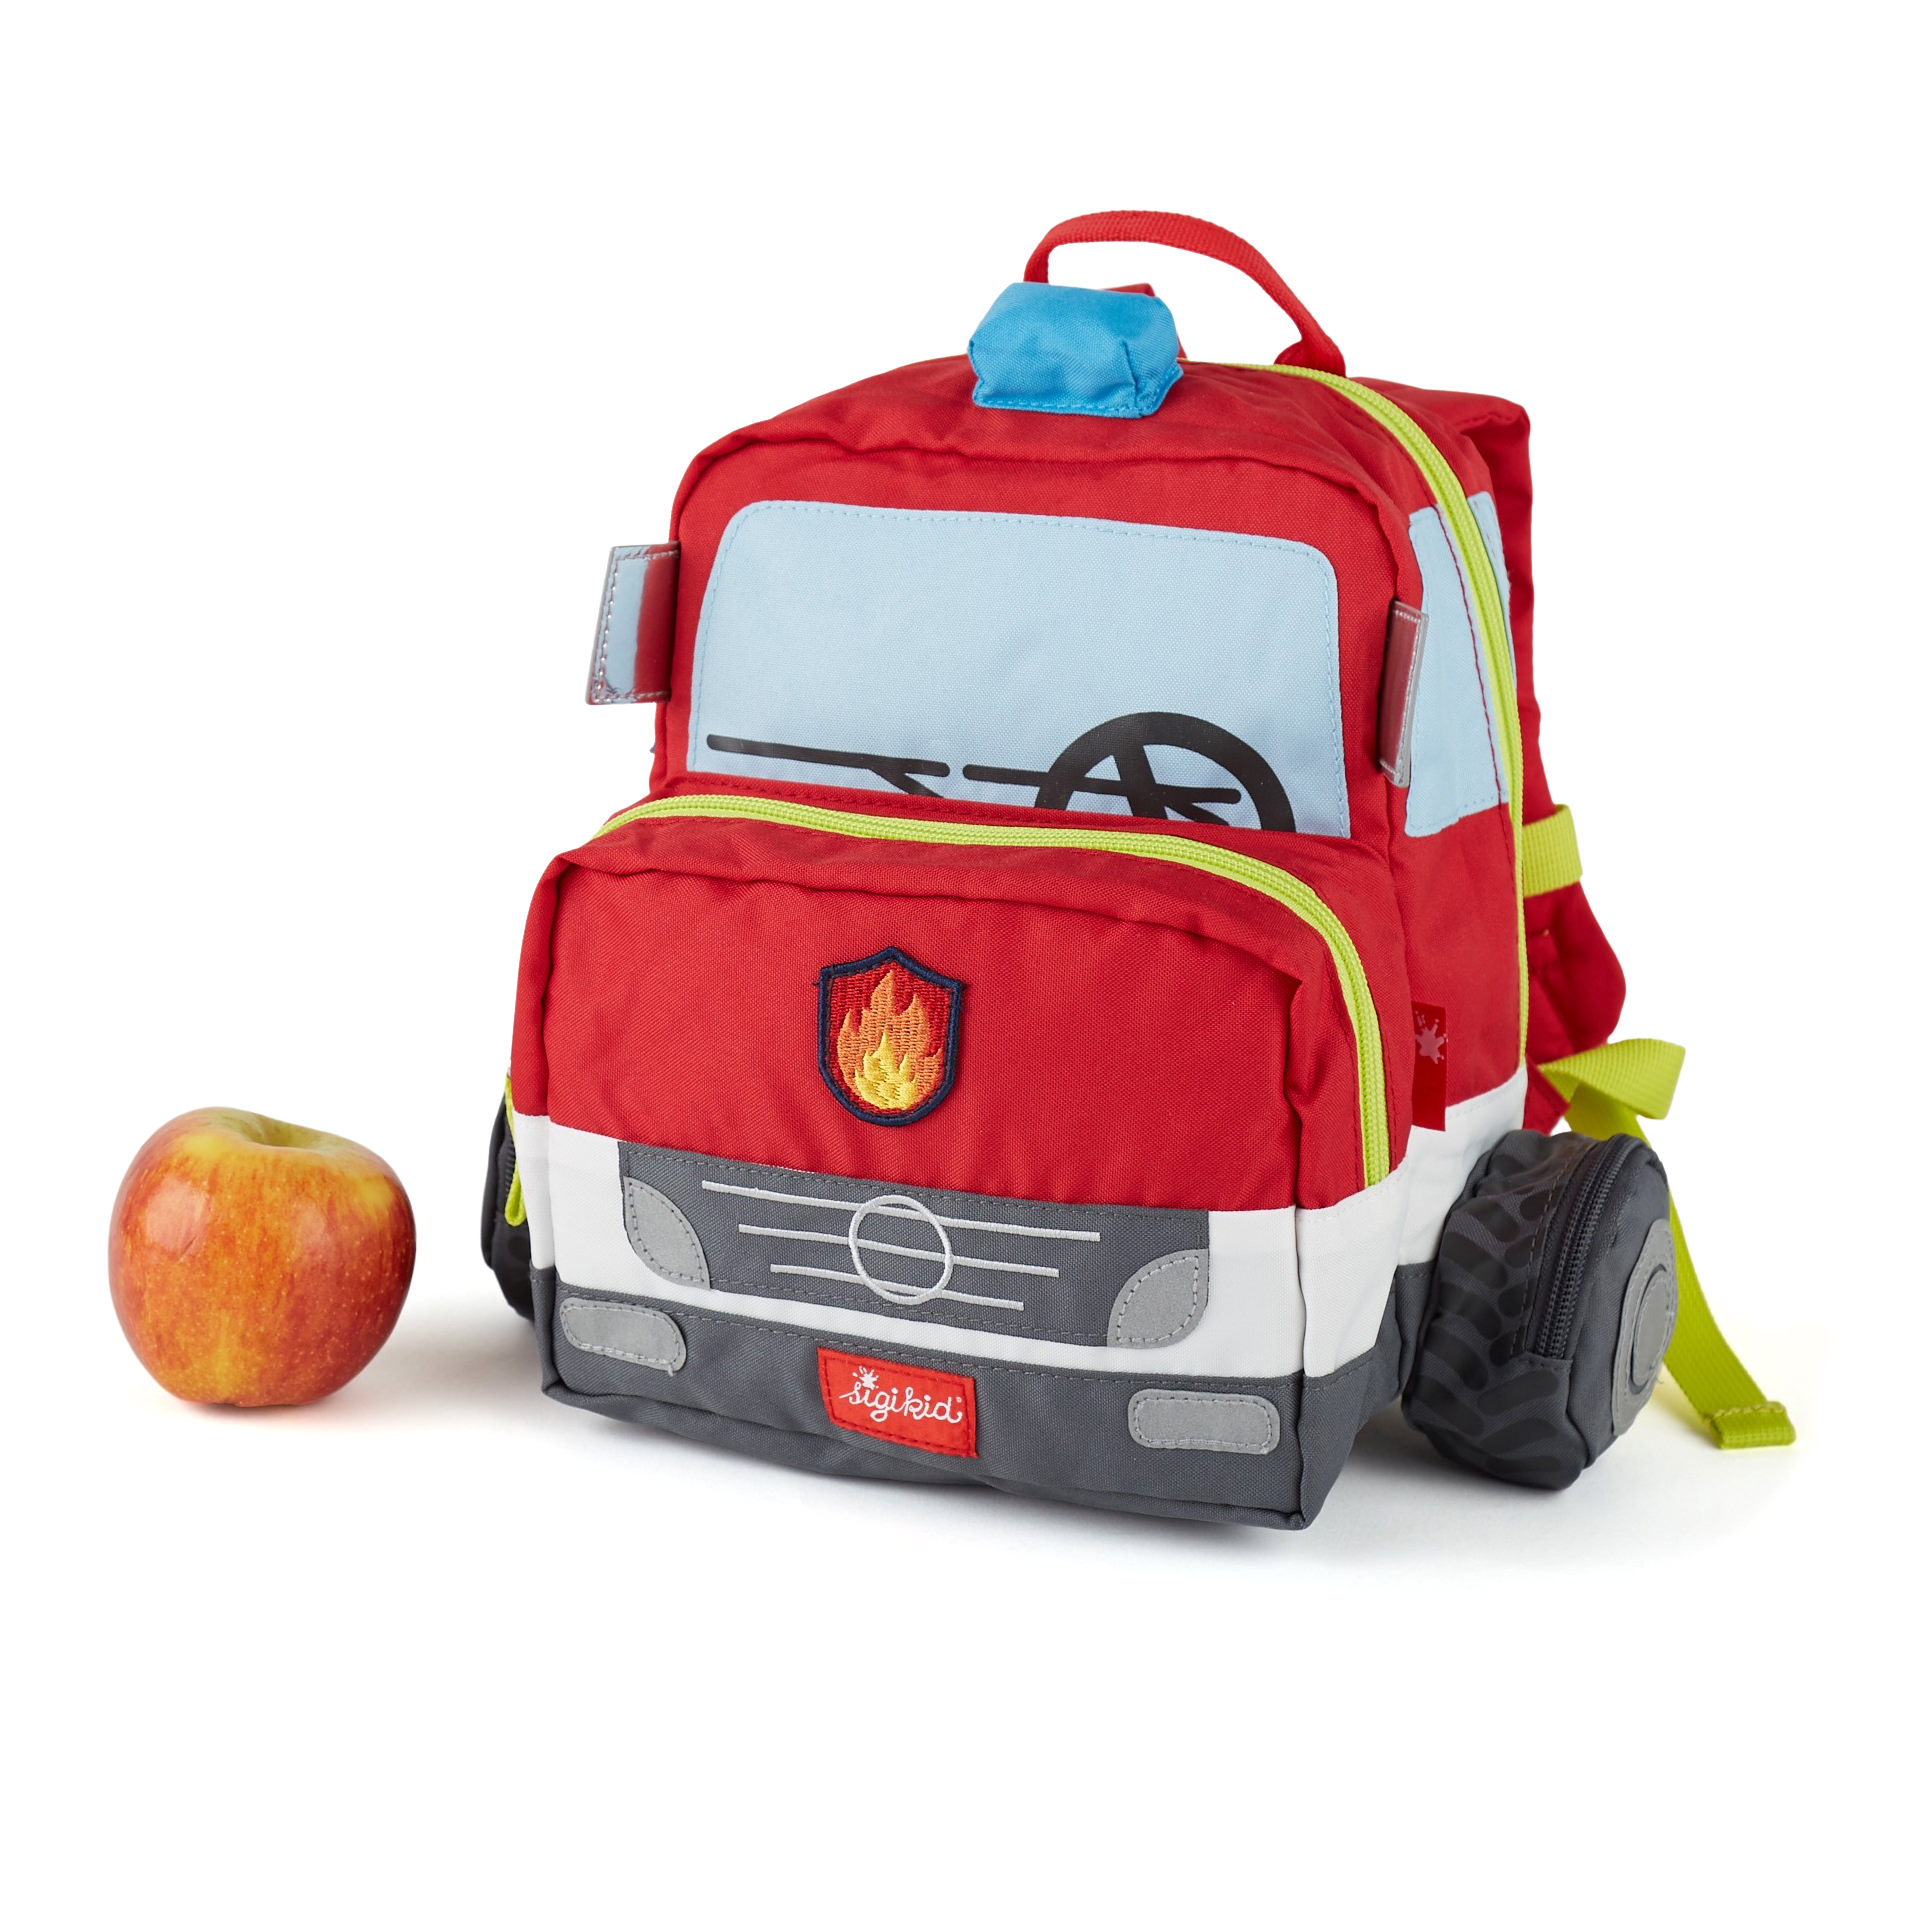 Kindergarden backpack fire truck